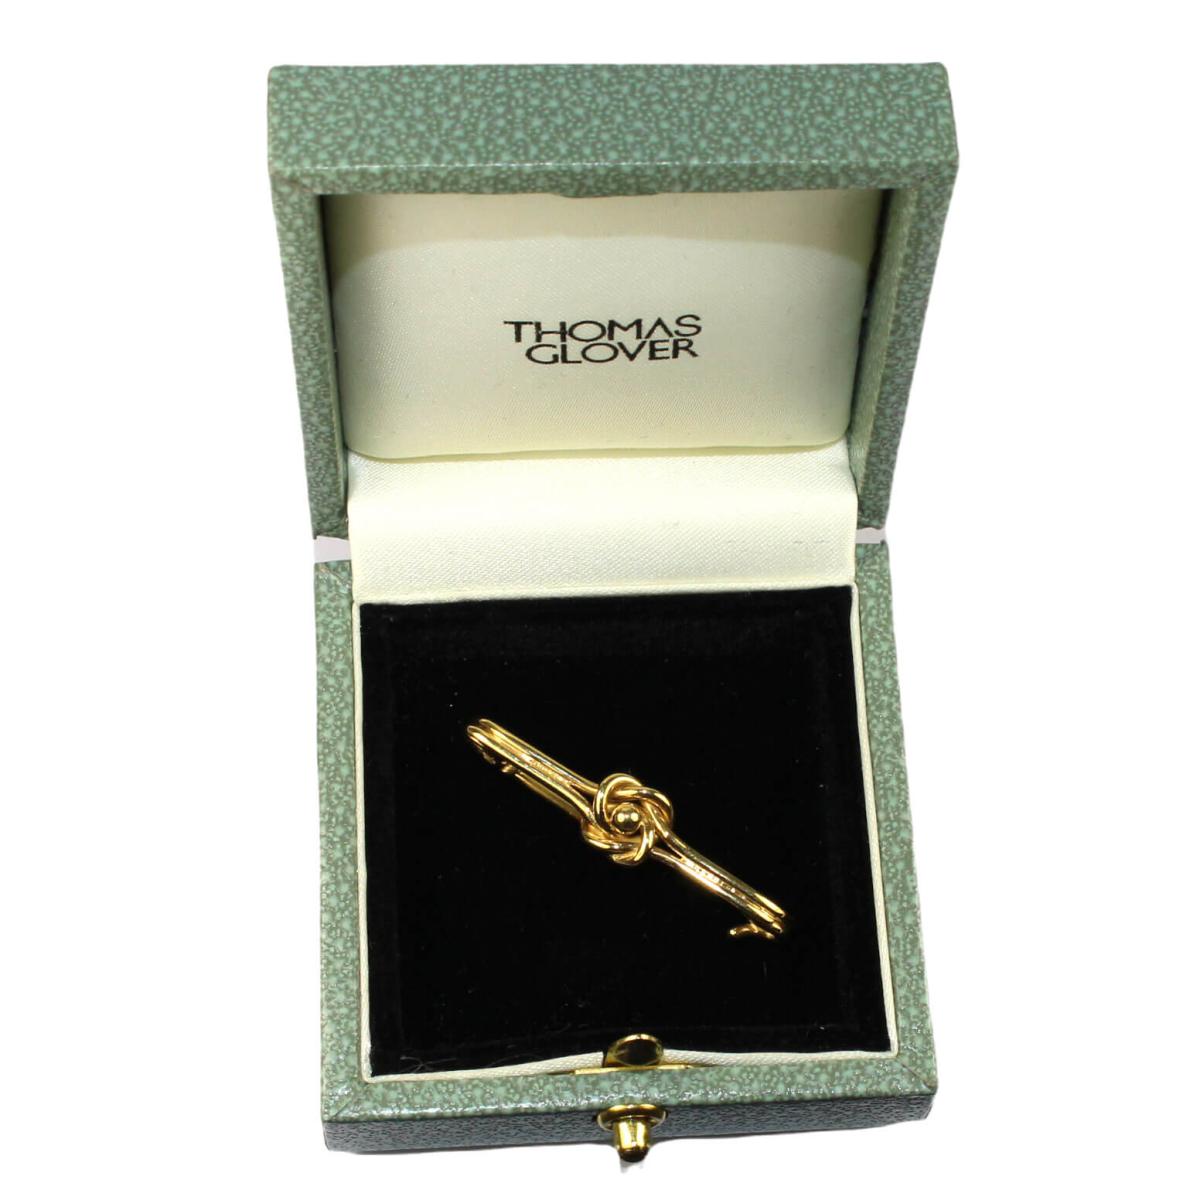 Edwardian Gold Knot Stock Pin circa 1905